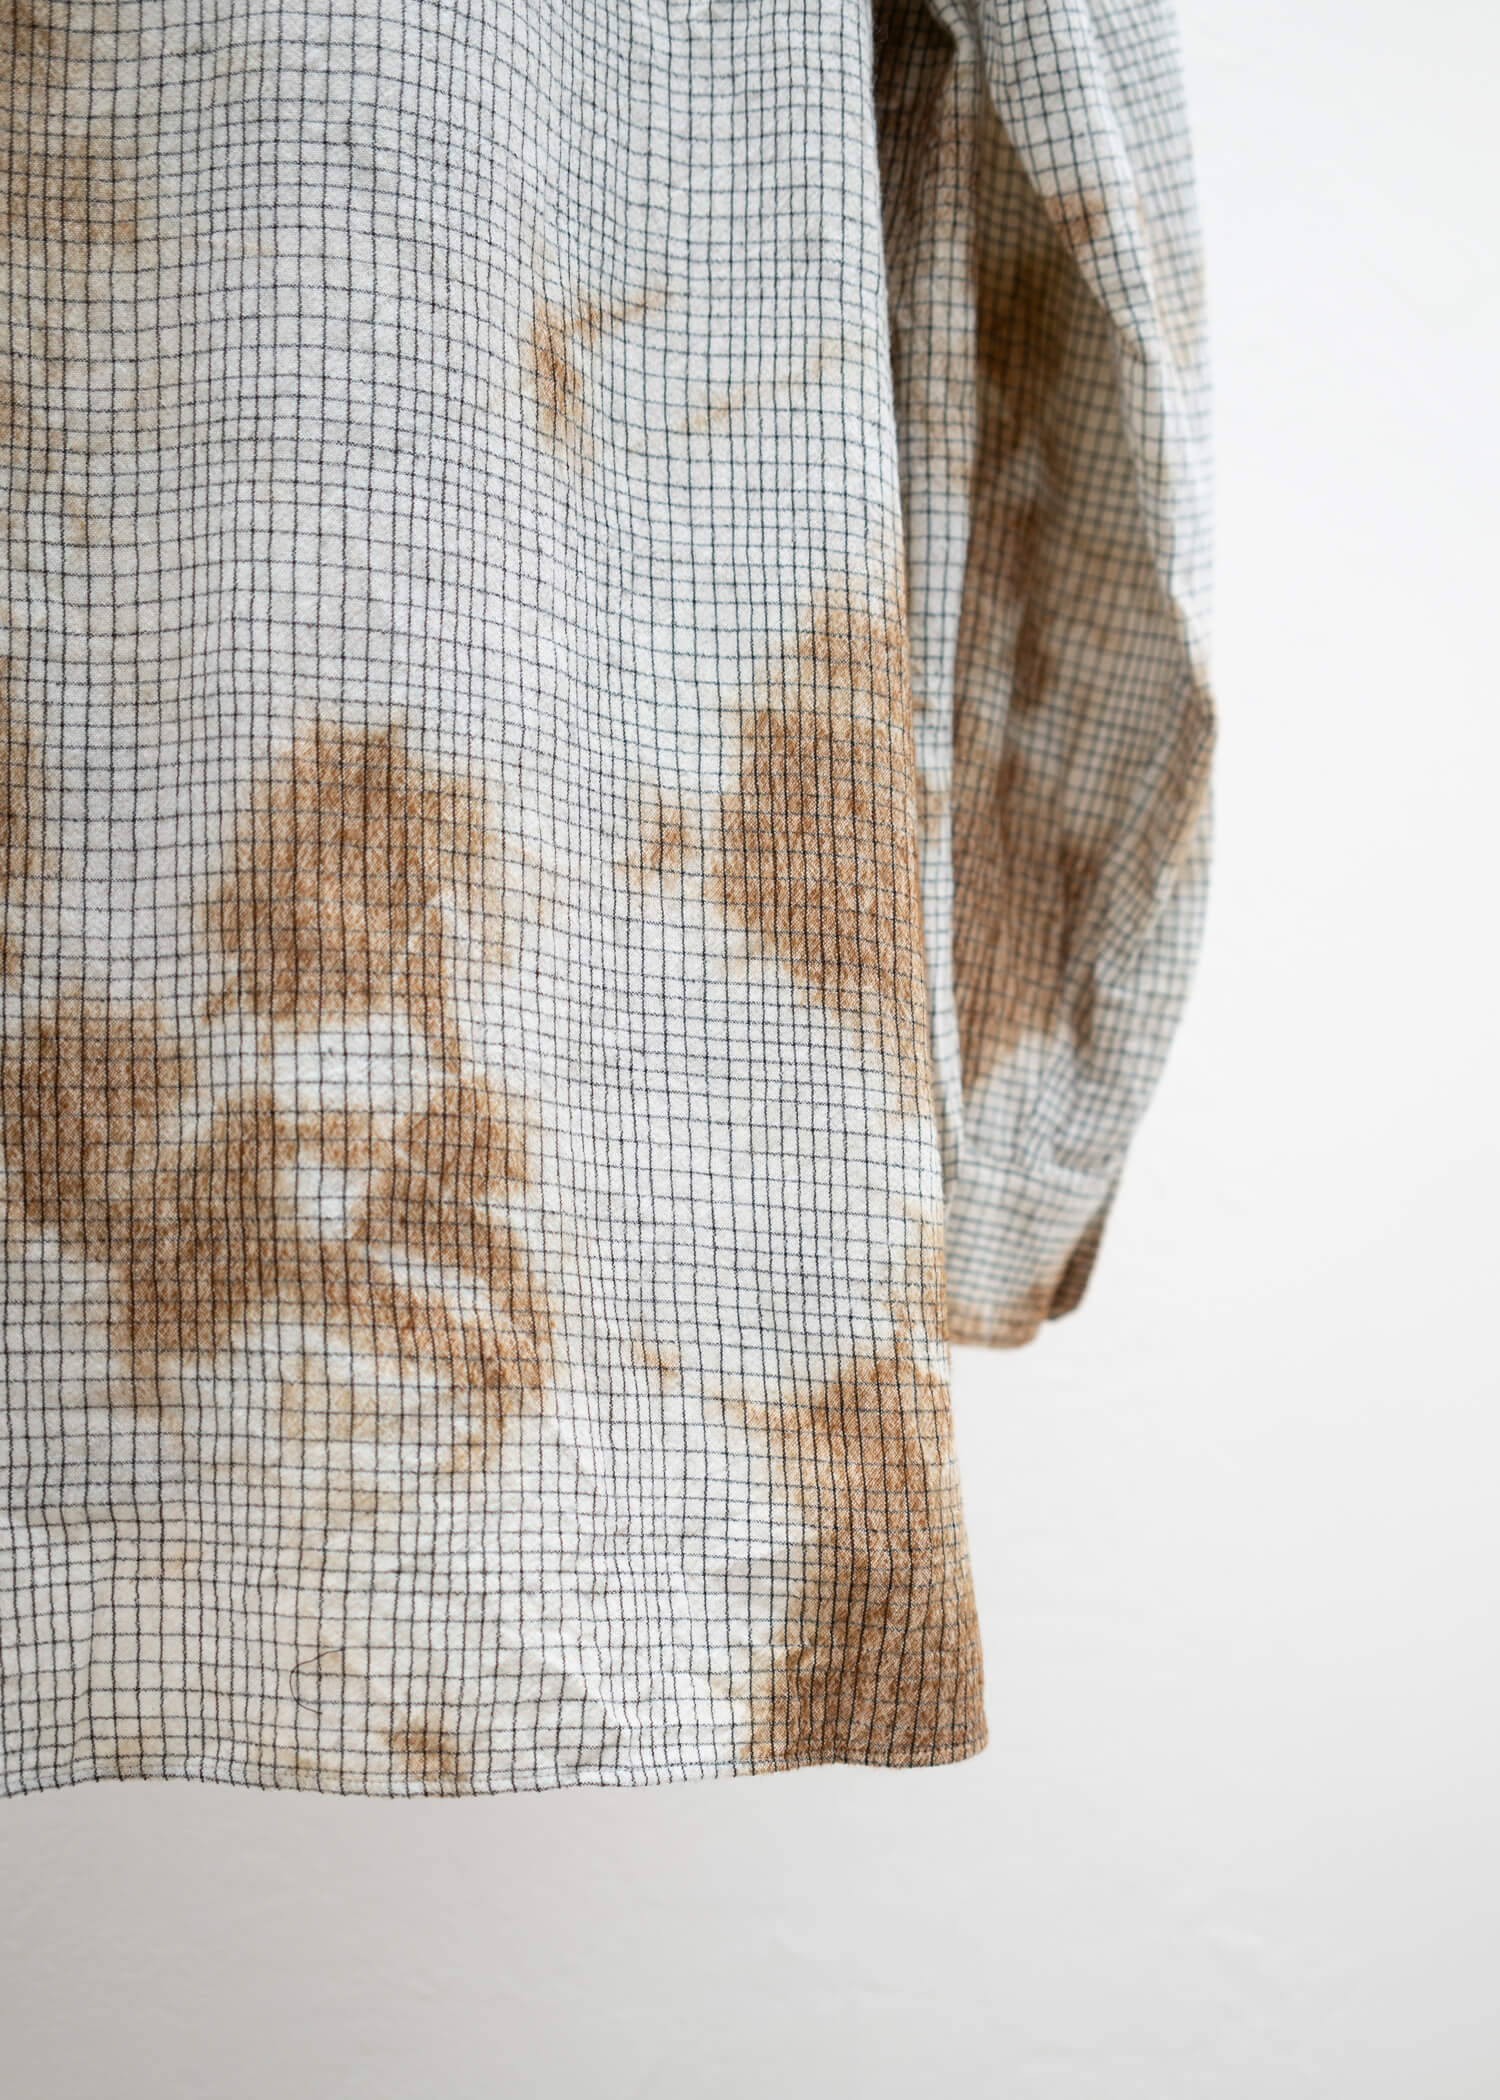 SUZUSAN Wool Cotton Linen Pencil Check Shirt(Madara Shibori) Brown - Natural White,